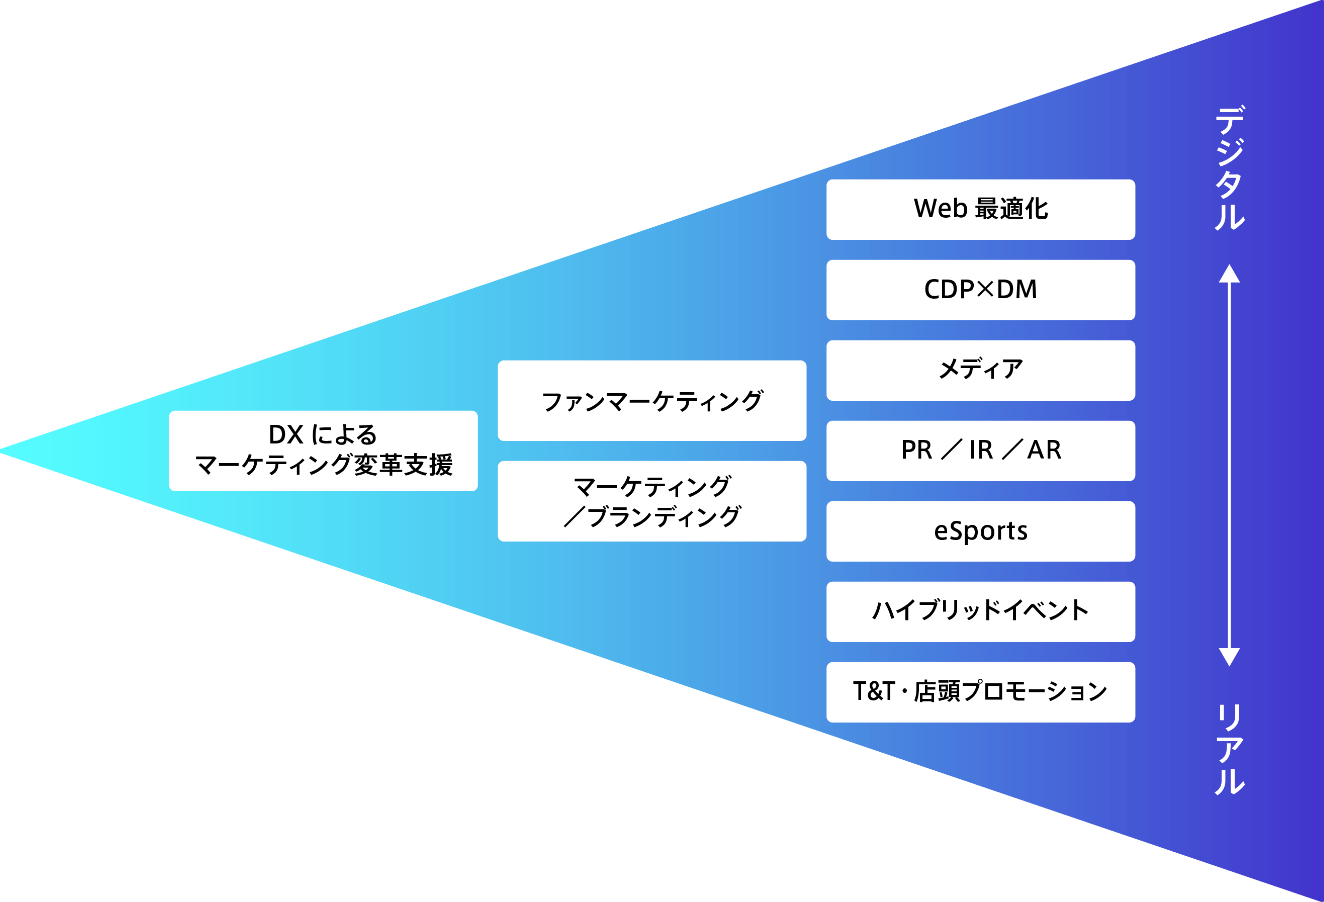 10個のソリューションを一覧にまとめた図。NTTアドが戦略から実行まで、リアルもデジタルも含めて支援できることを表している。